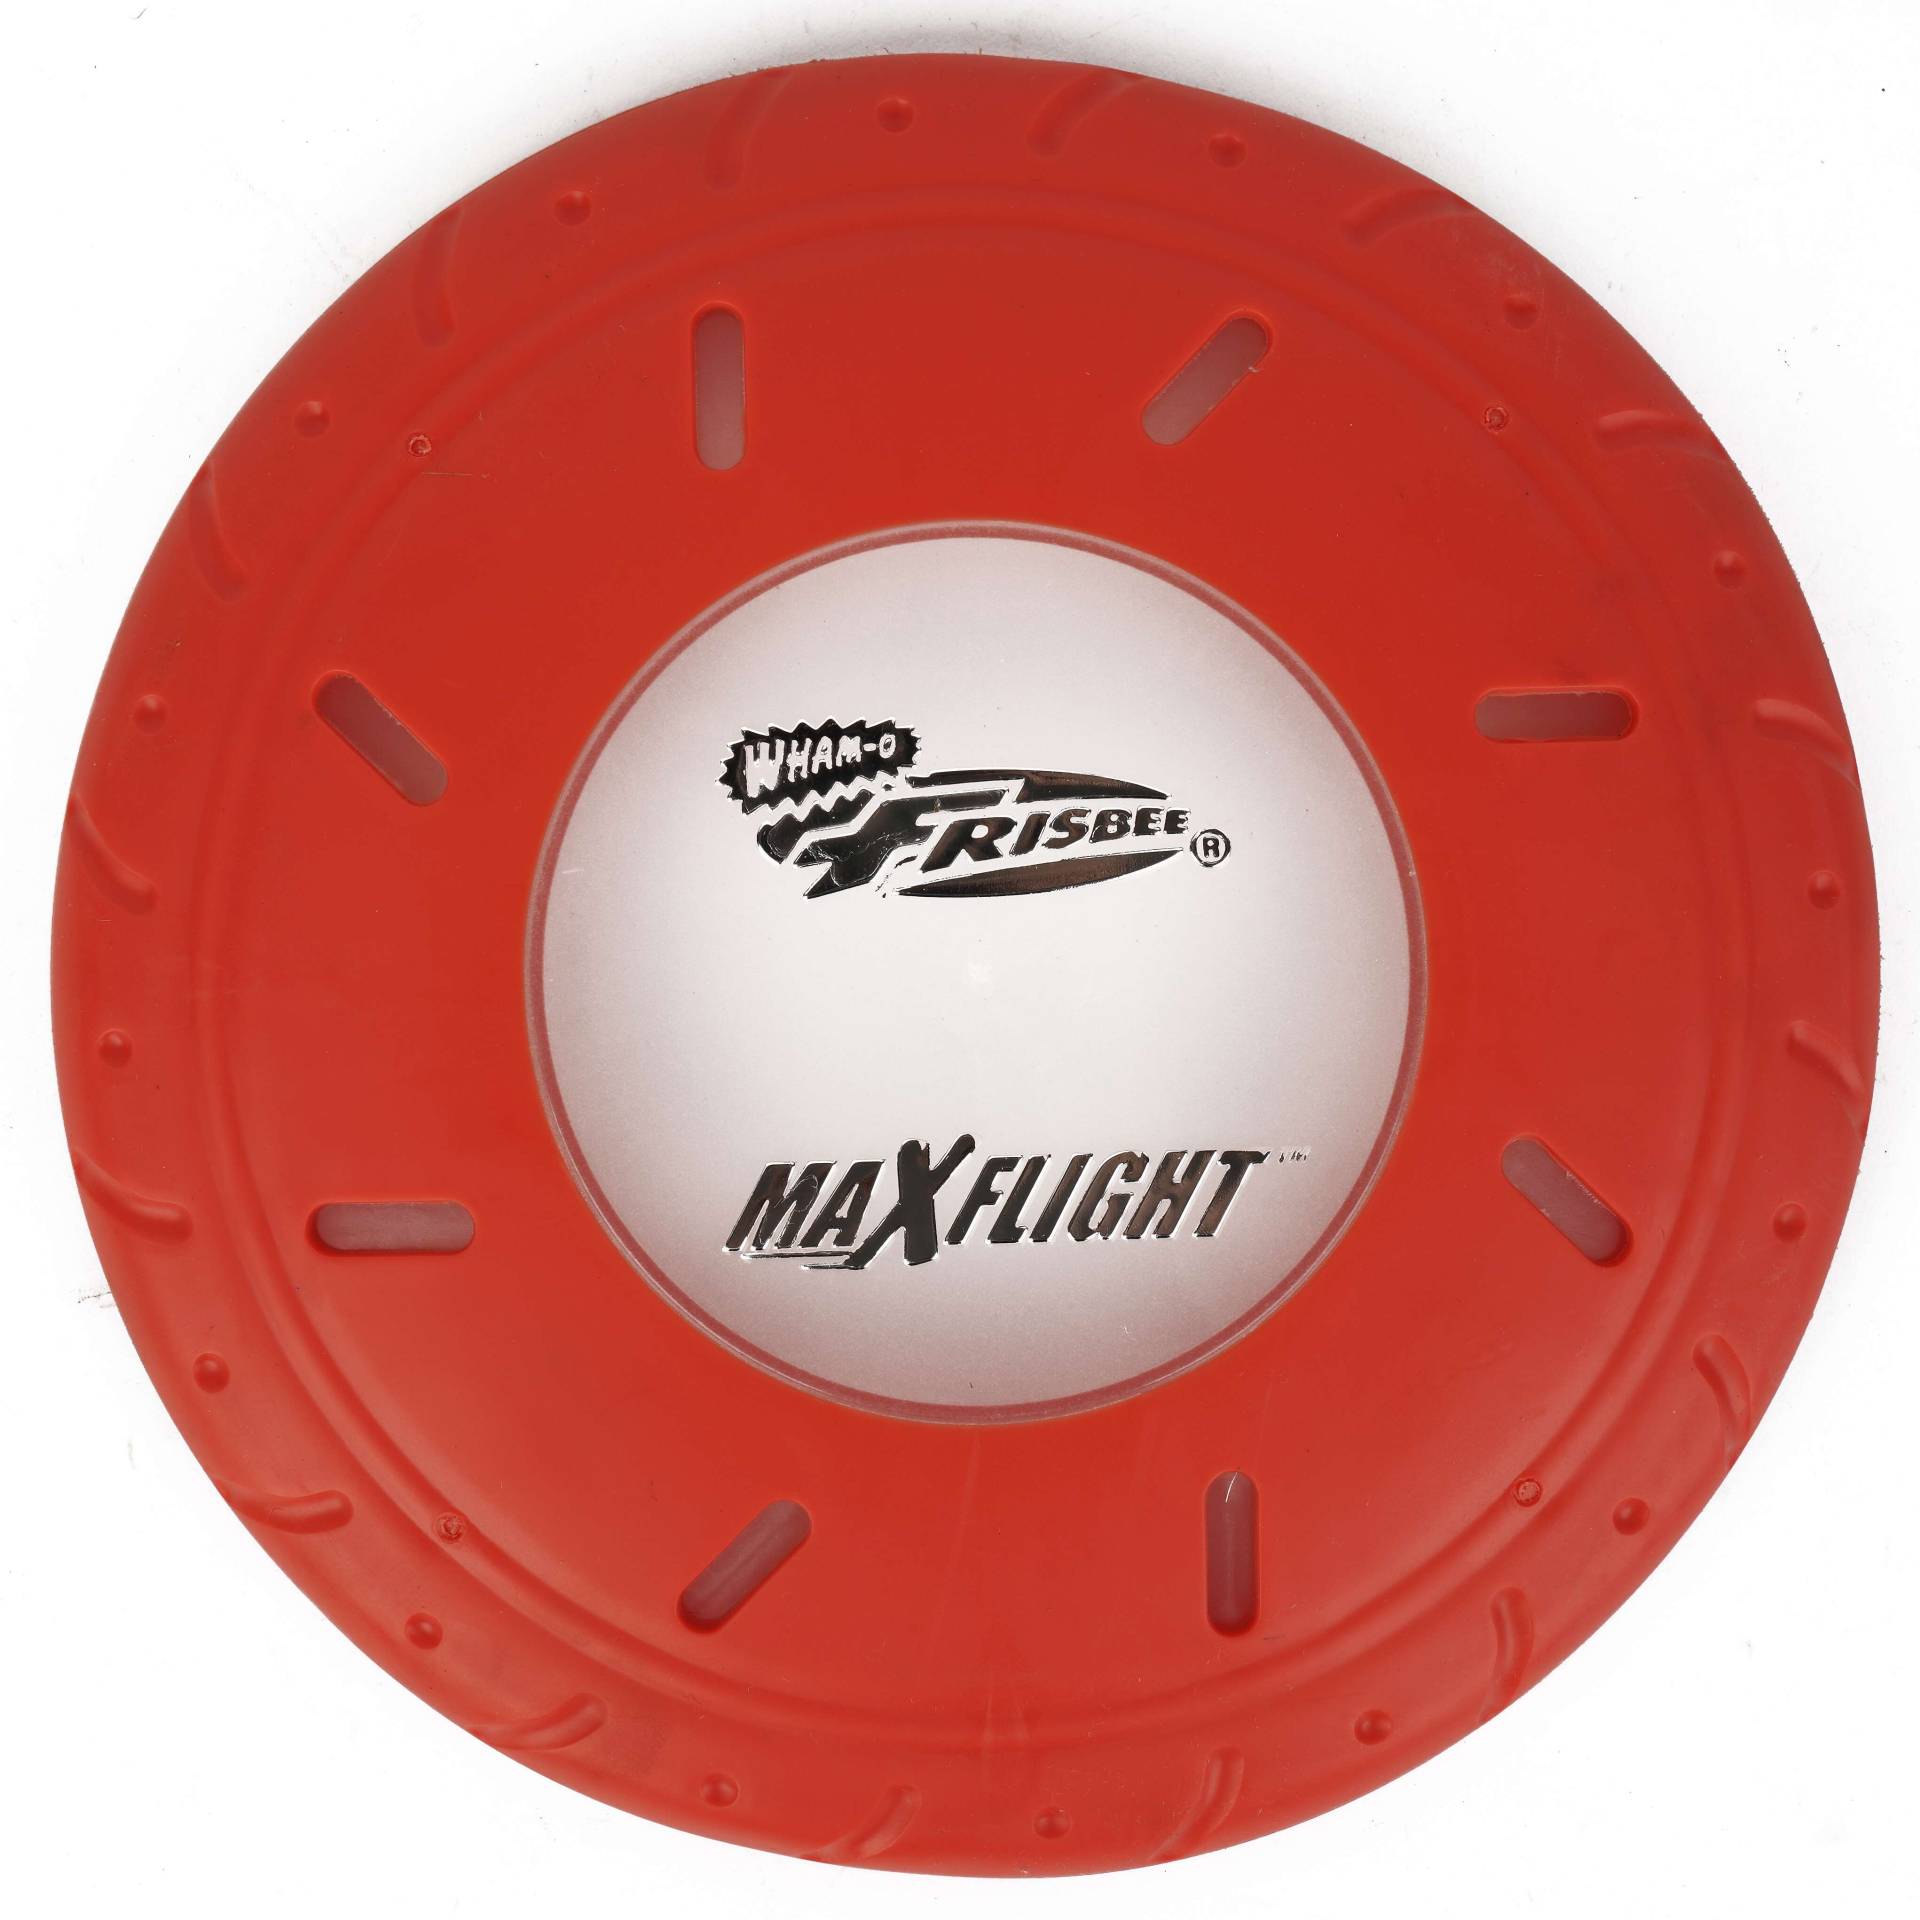 Frisbee Wurfscheibe "Max Flight" von Frisbee